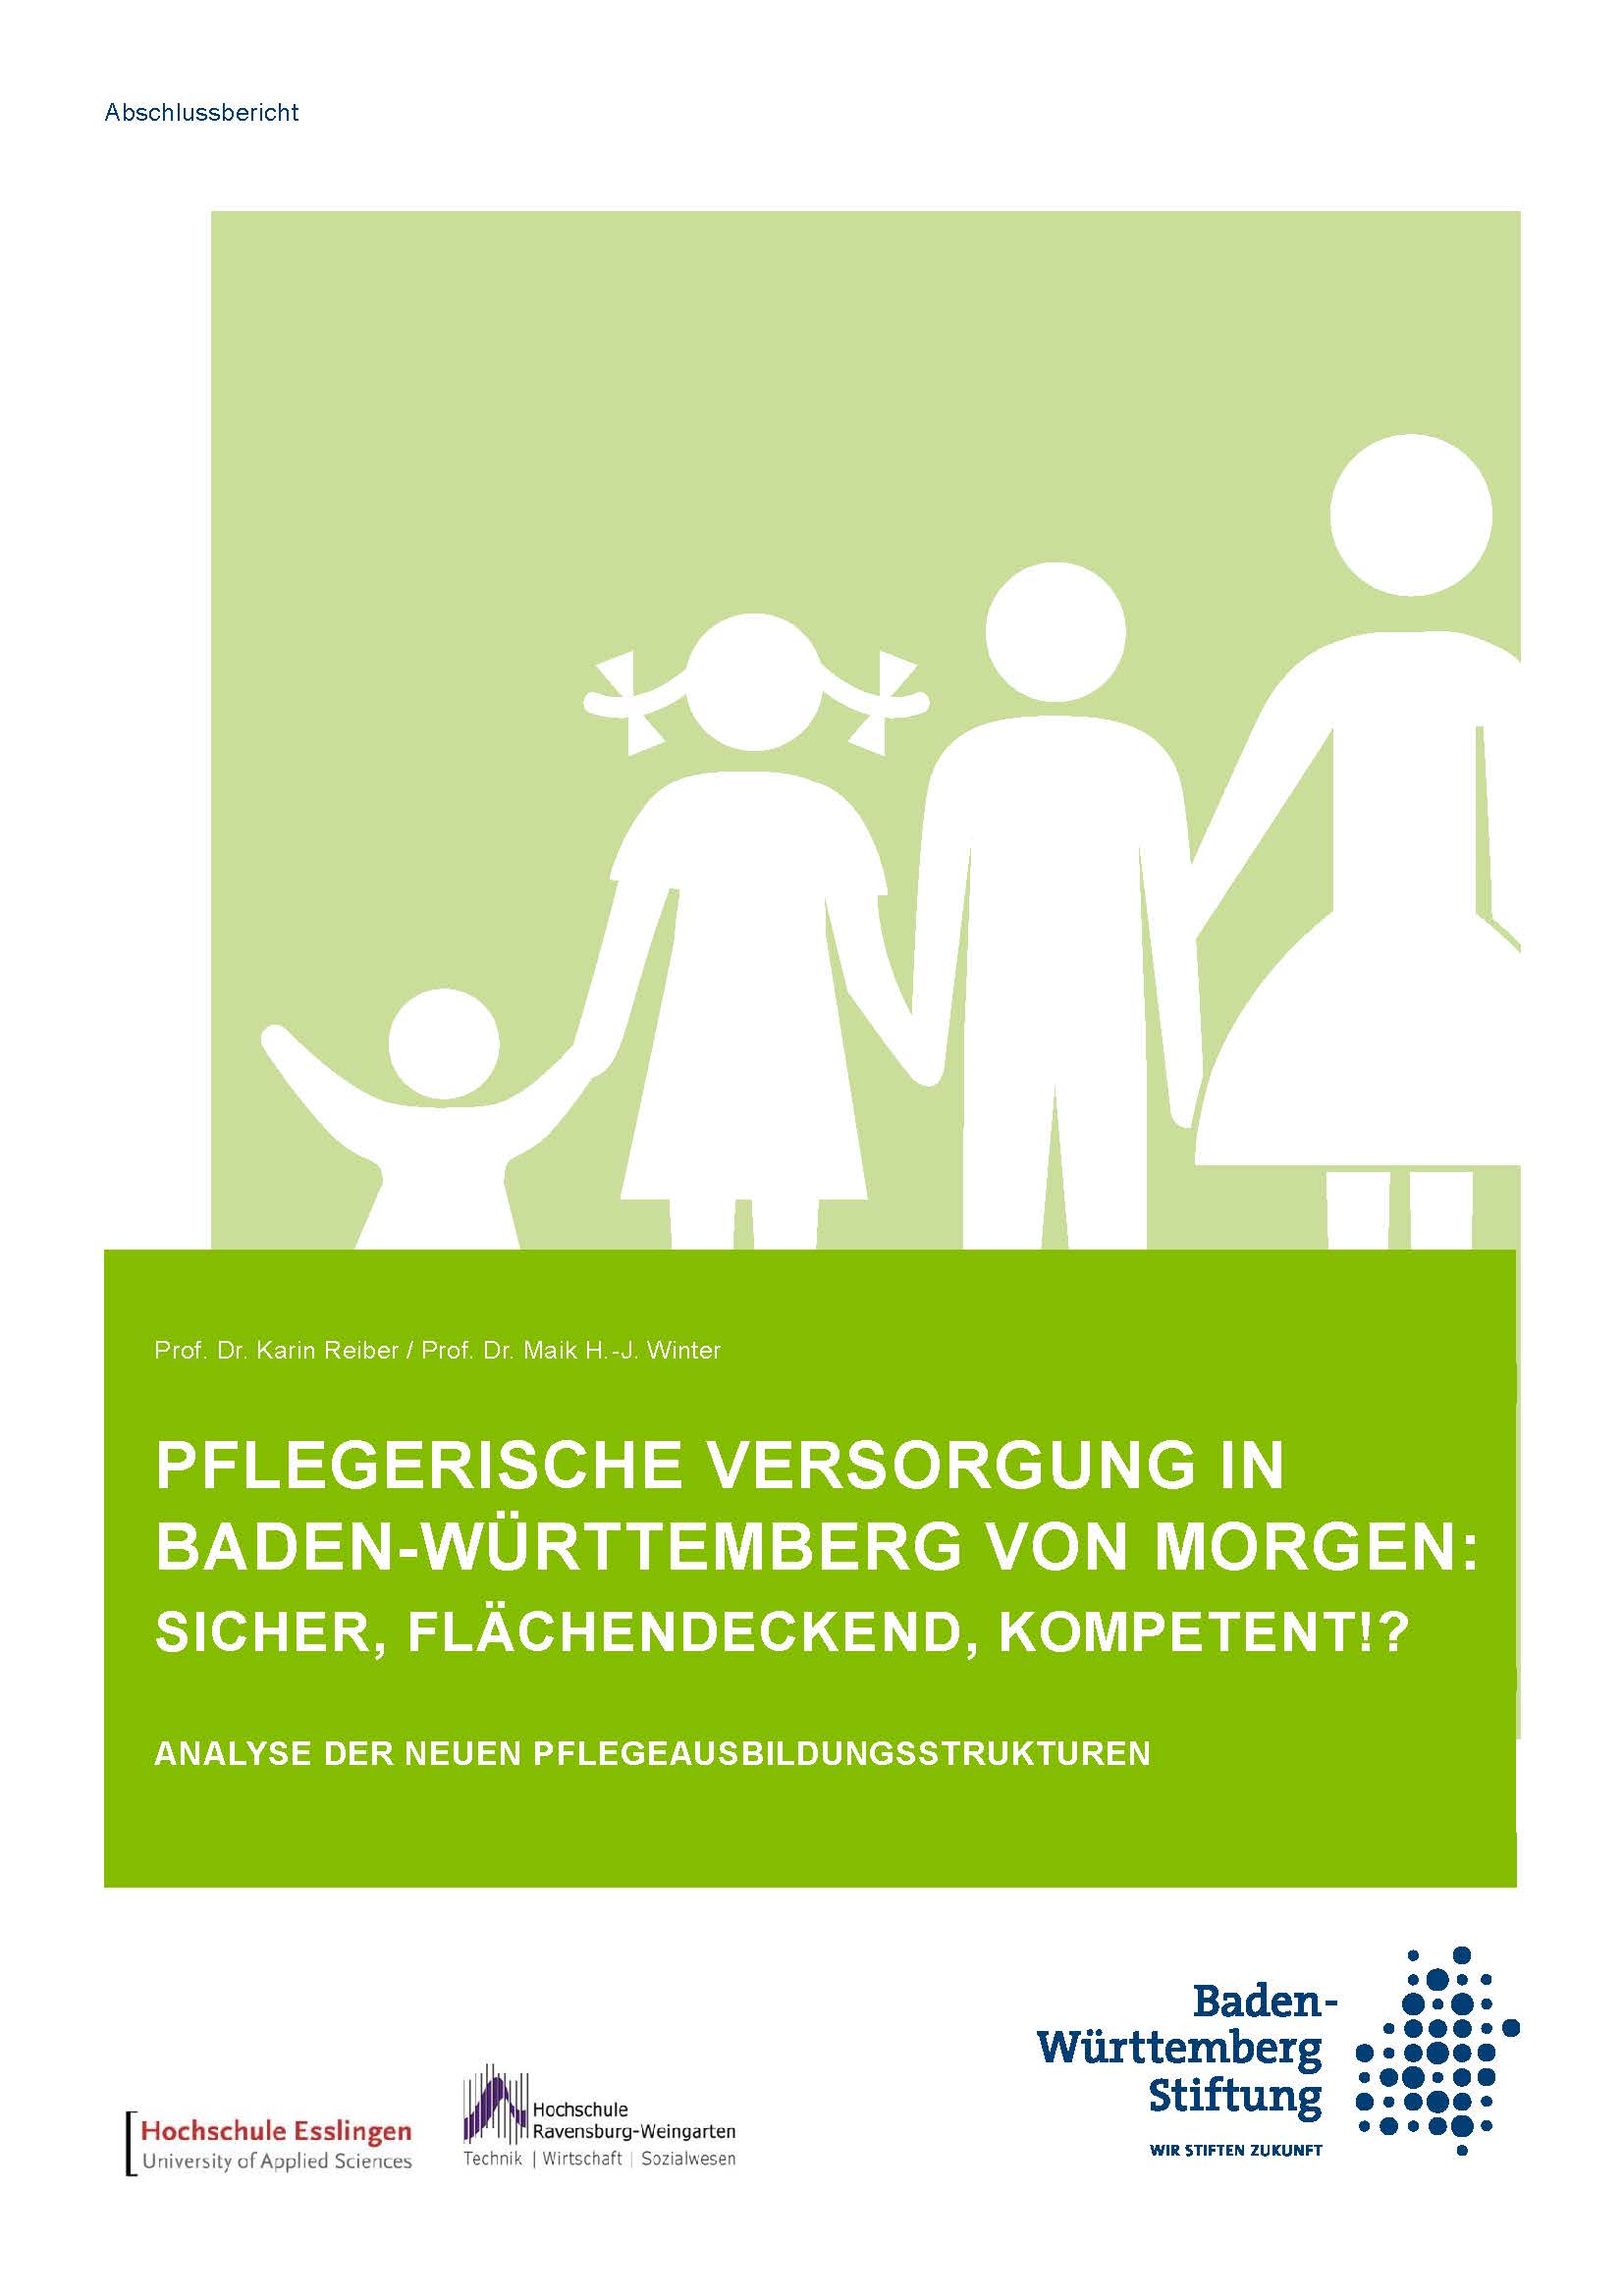 Titelblatt der Abschlussarbeit "Analyse der neuen Pflegeausbildungsstrukturen"